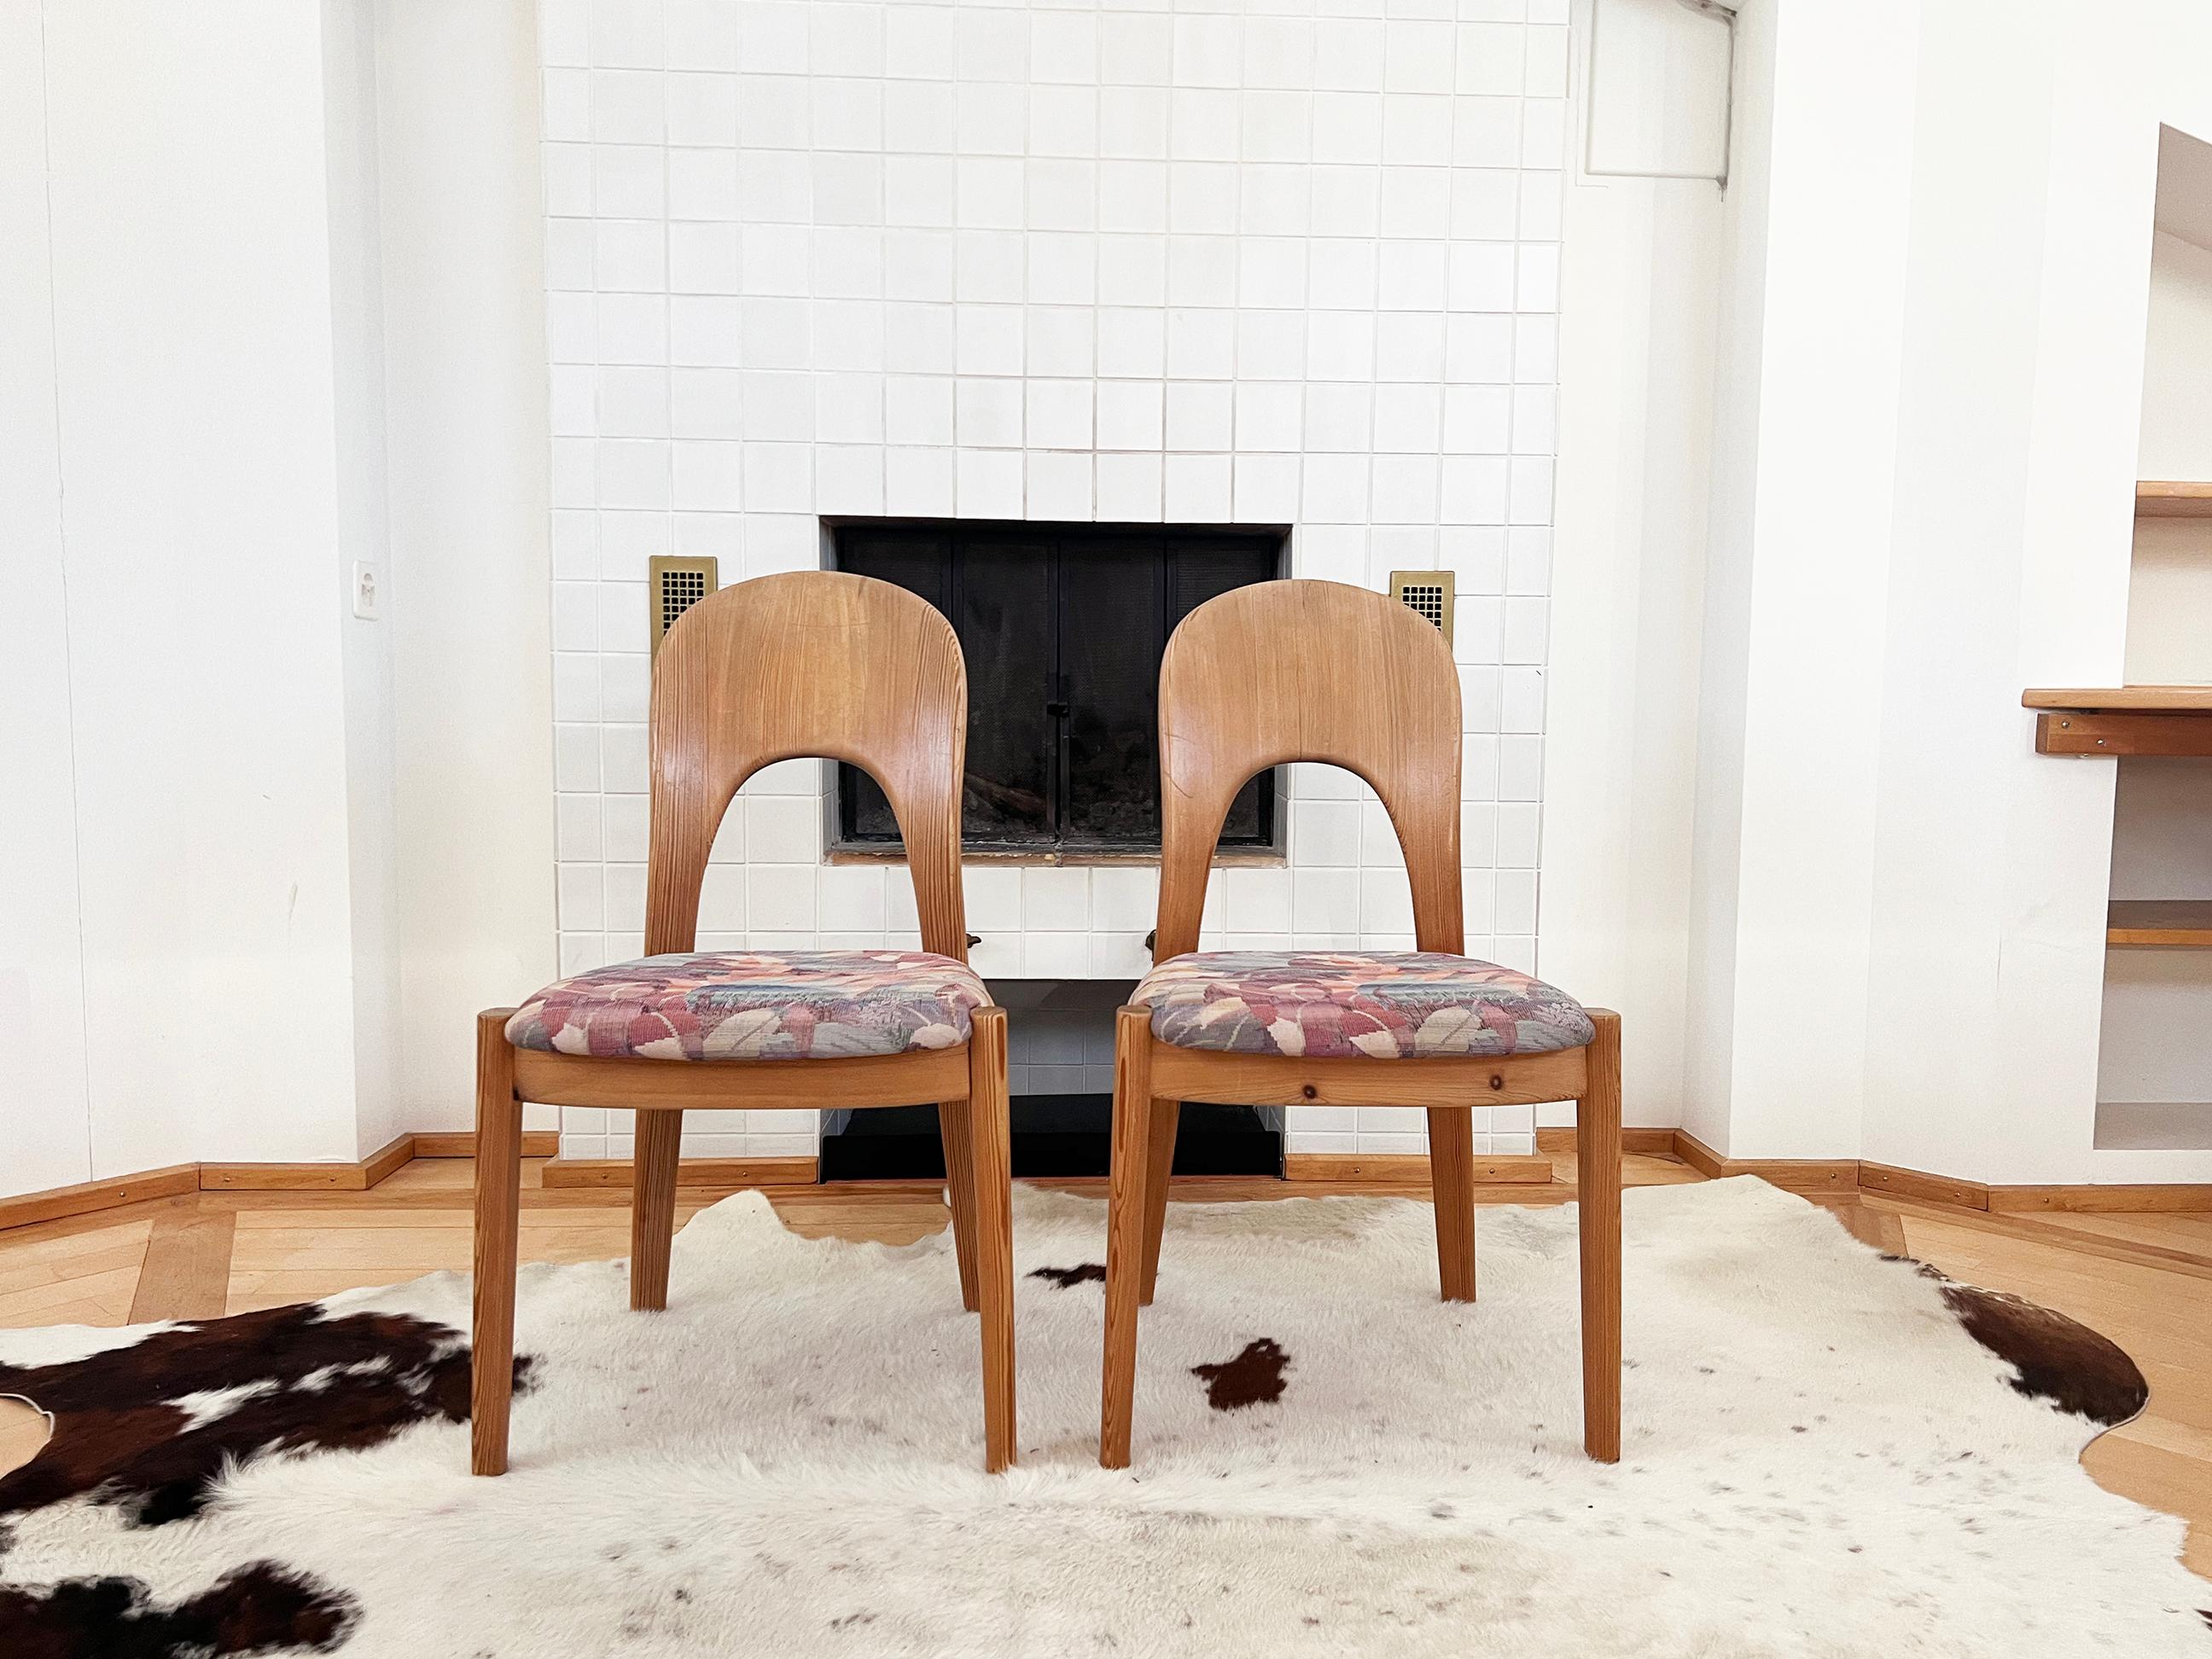 Fantastisches Set von 6 sehr hochwertigen, schönen Stühlen aus massivem Kiefernholz des dänischen Designers Niels Koefoed Hornslet.  Sehr selten in Kiefer zu finden. Ausgezeichnete Handwerkskunst.  Sehr trendy in Kiefer!

Originalstempel unter allen